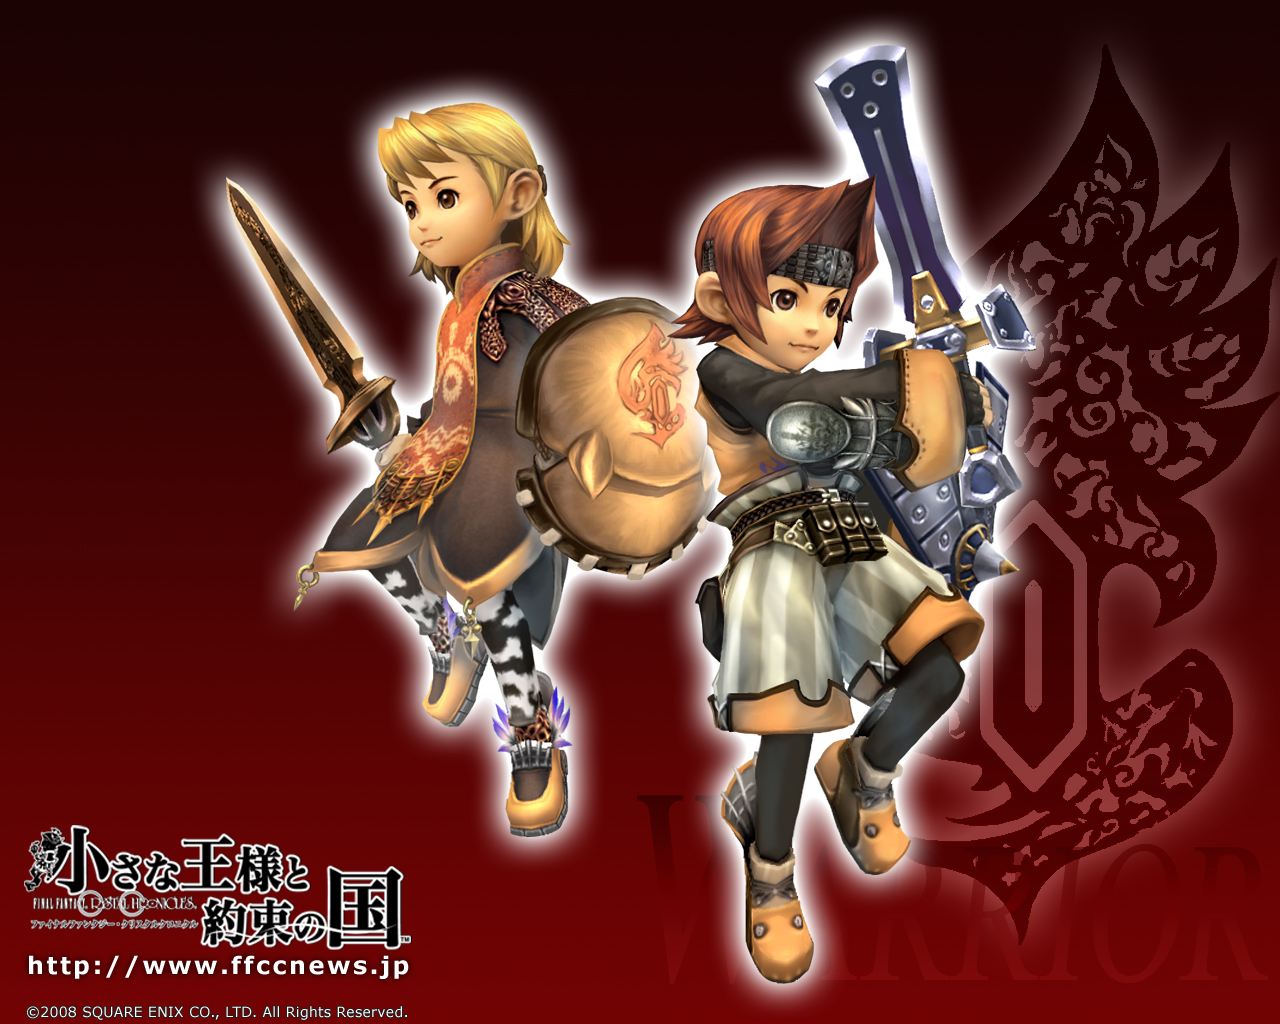 Bilder von Final Fantasy Final Fantasy: Crystal Chronicles Spiele computerspiel